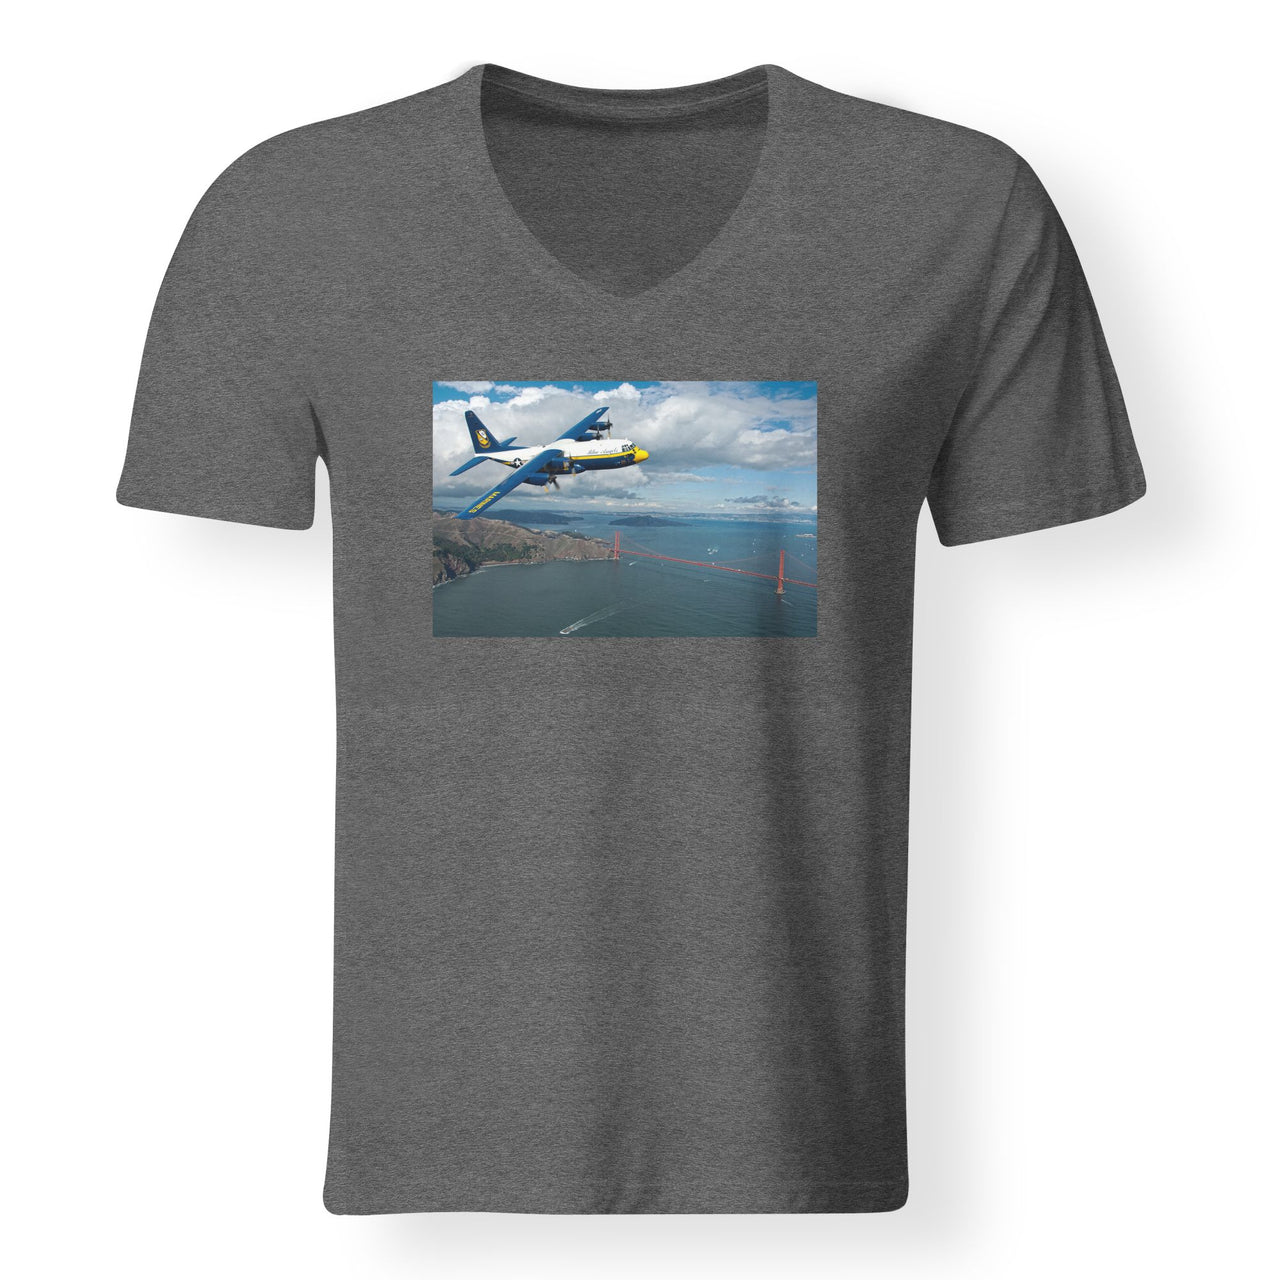 Blue Angels & Bridge Designed V-Neck T-Shirts